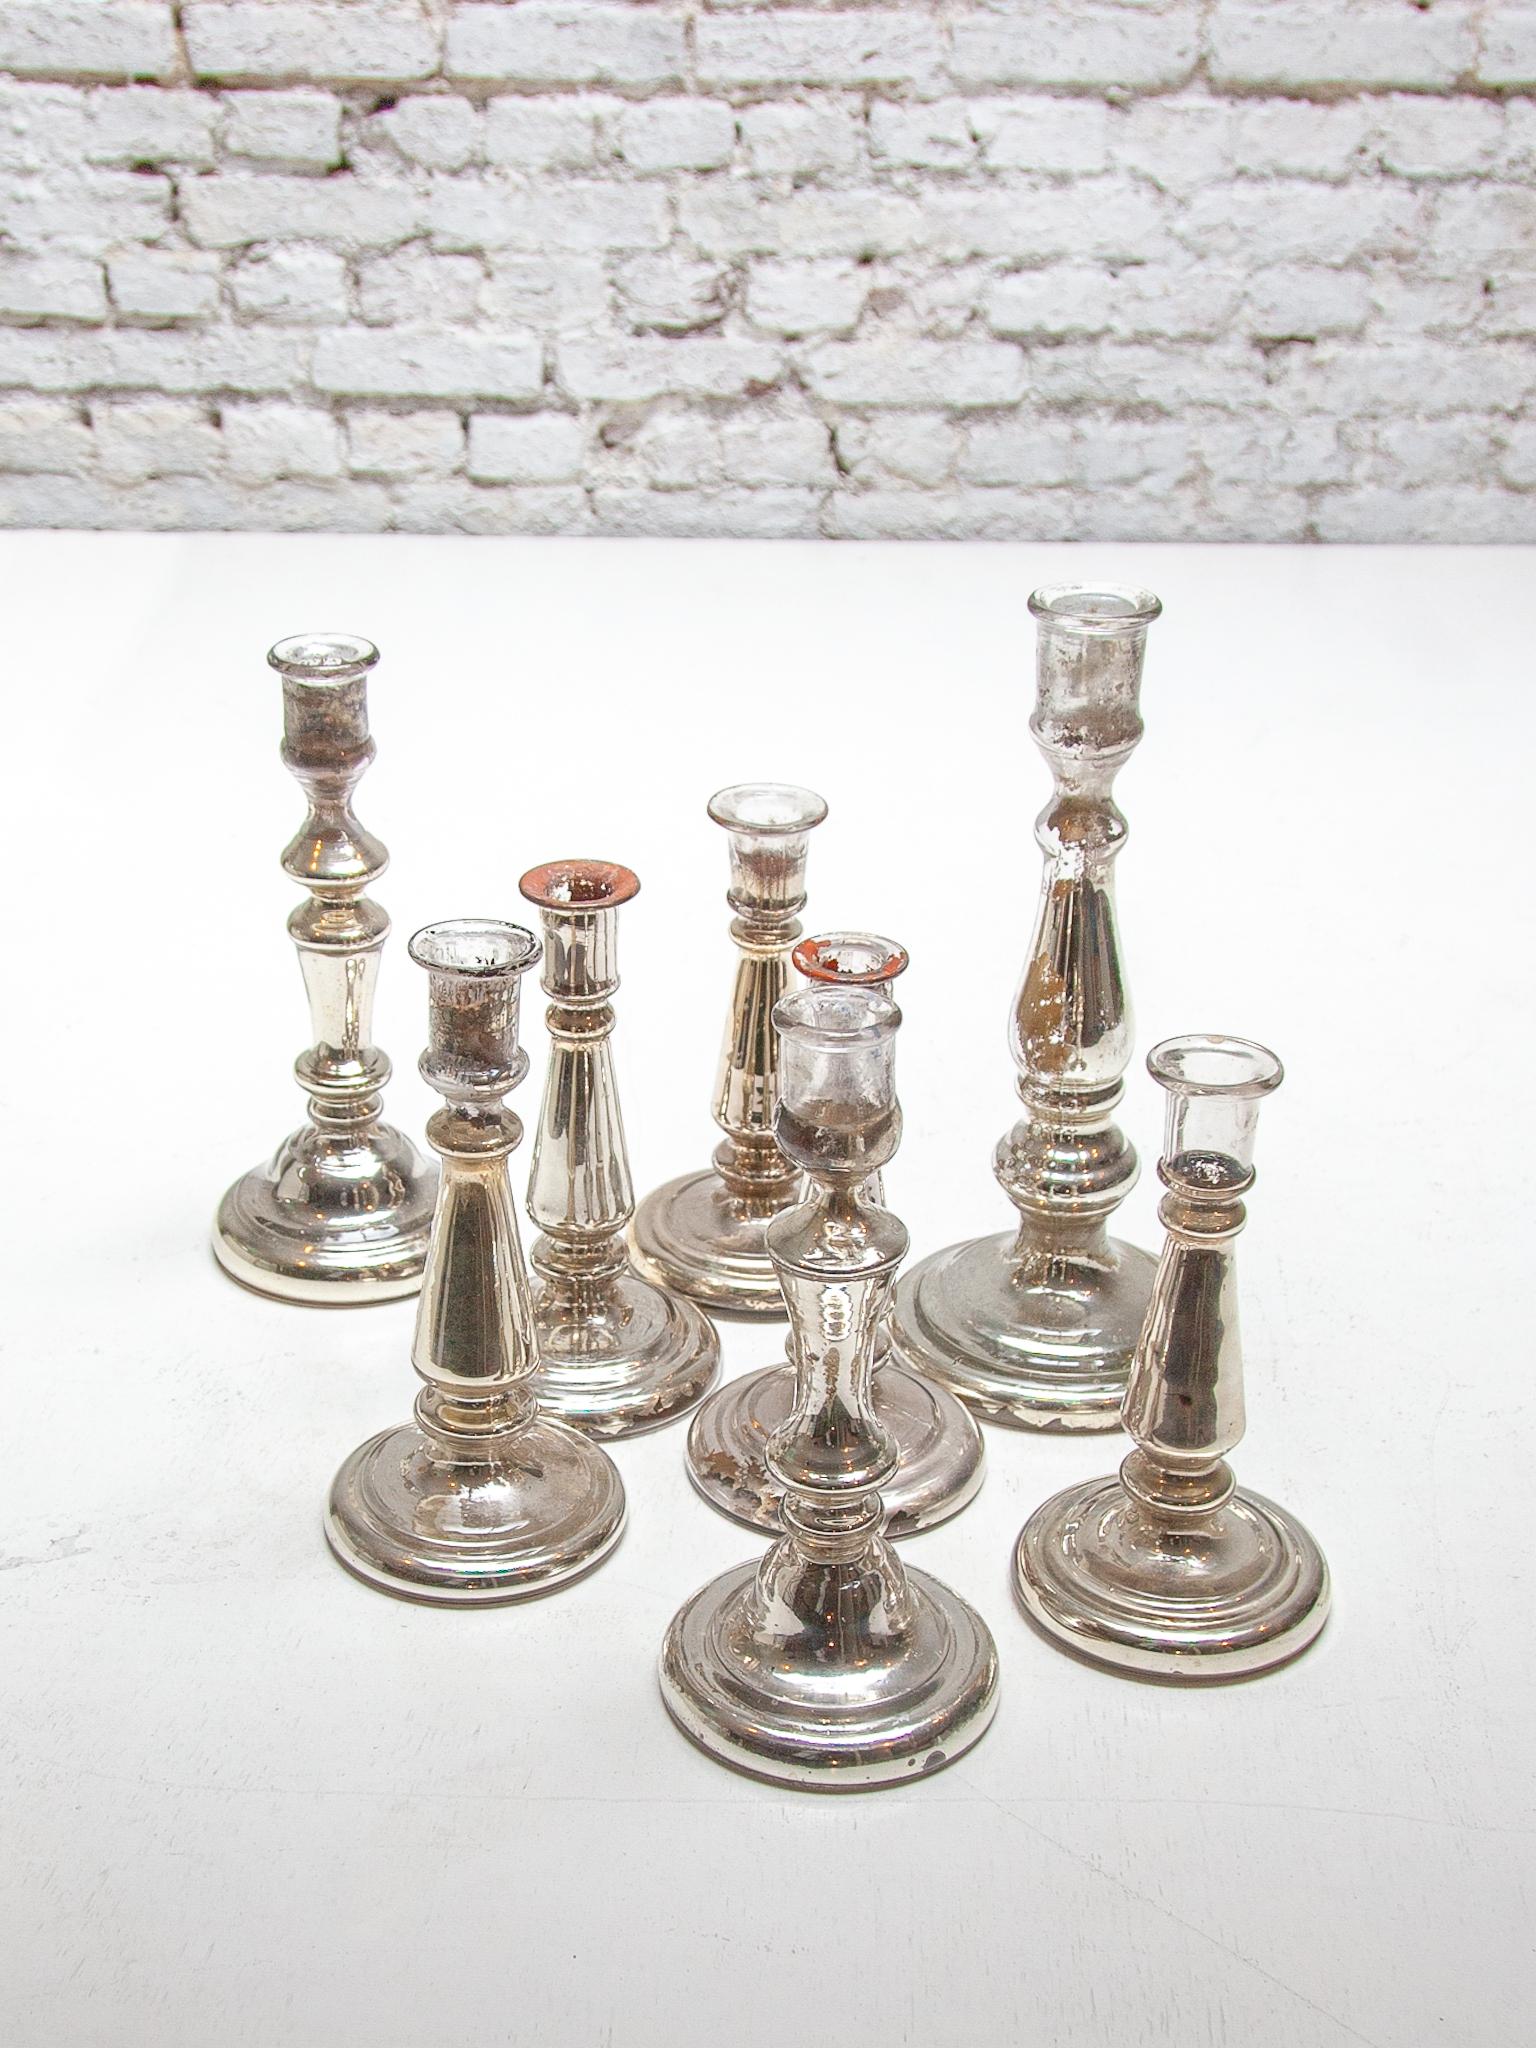 Ein sehr dekorativer Satz von sieben verschiedenen Glas-Silber-Leuchtern C 1900-1920. Jeder Kerzenständer aus Armensilber besteht aus doppelwandigem Glas, das innen versilbert ist. Altes Armensilber ist oft schön verwittert und hat ein ganz